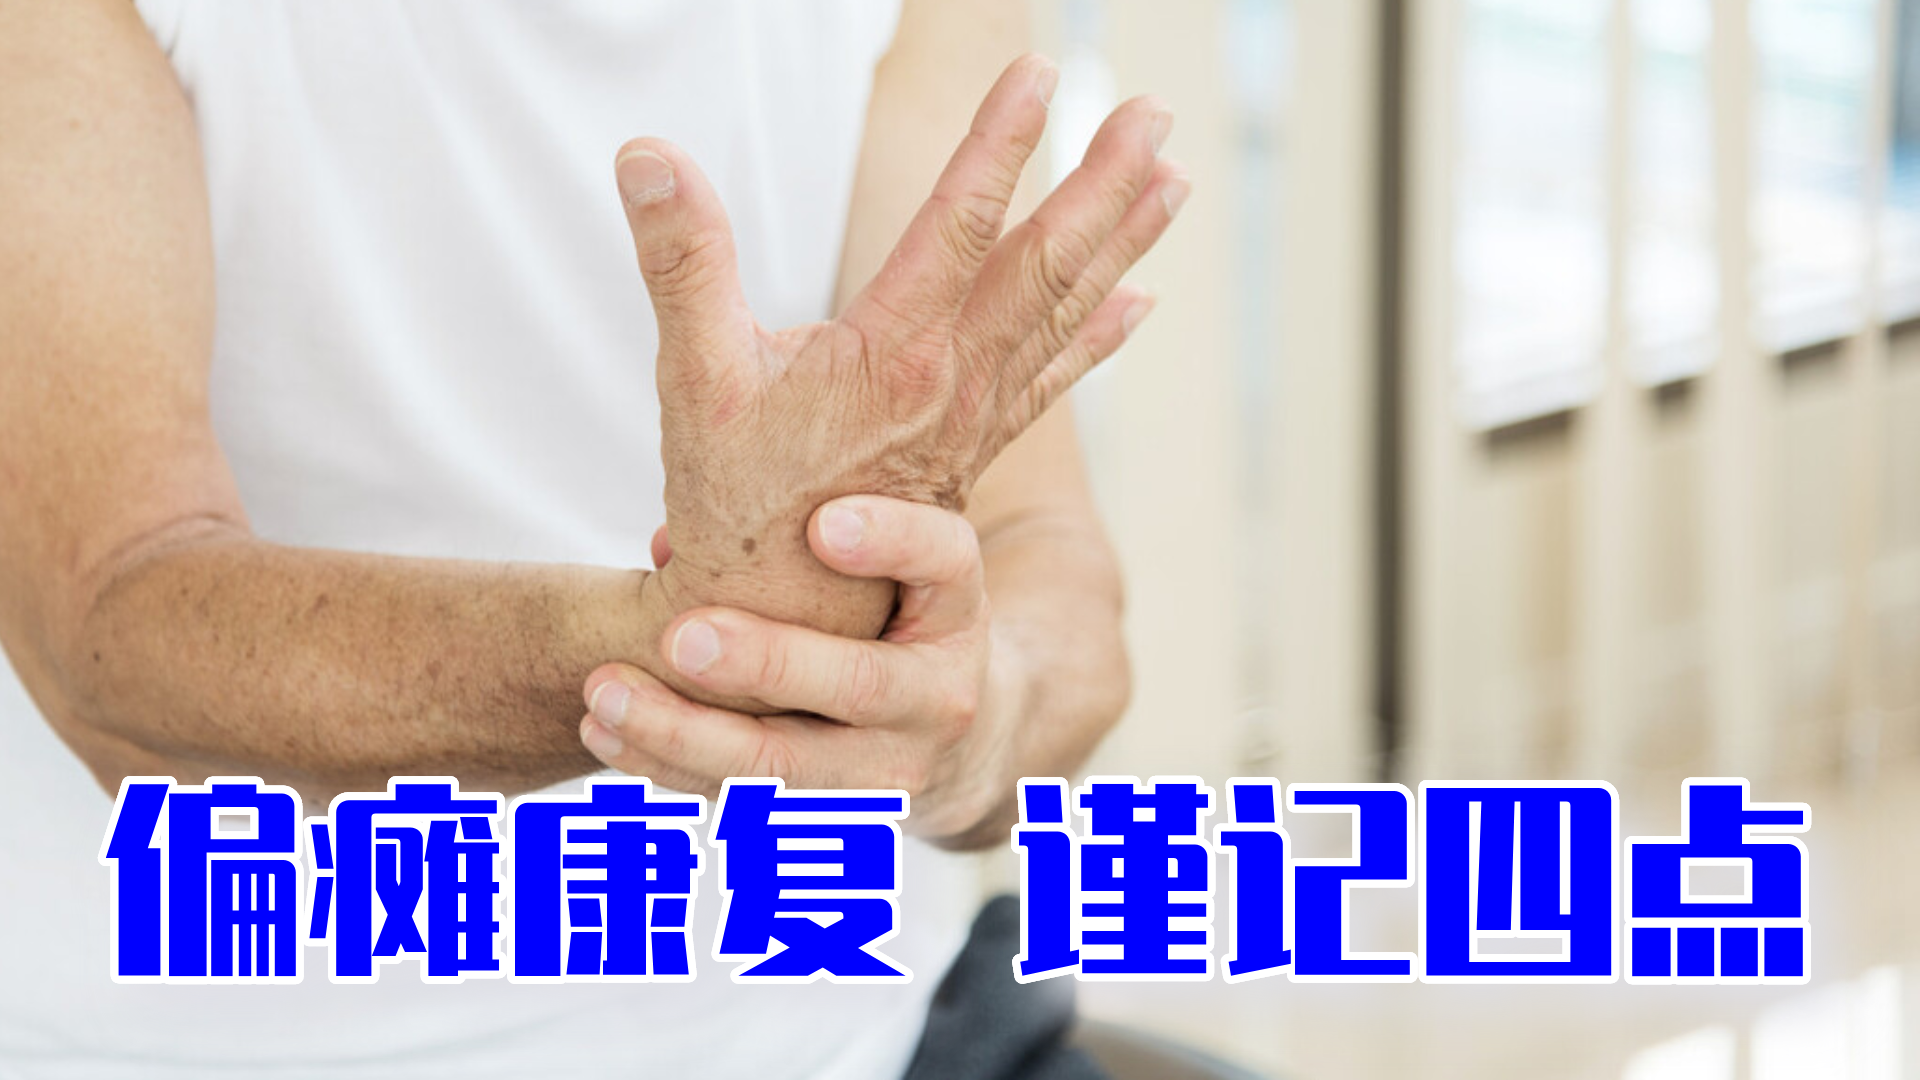 扳机指(手指屈肌腱的狭窄性腱鞘炎) - 运动损伤专栏 - 杭州尤看运动健康管理有限公司滨江第一分公司